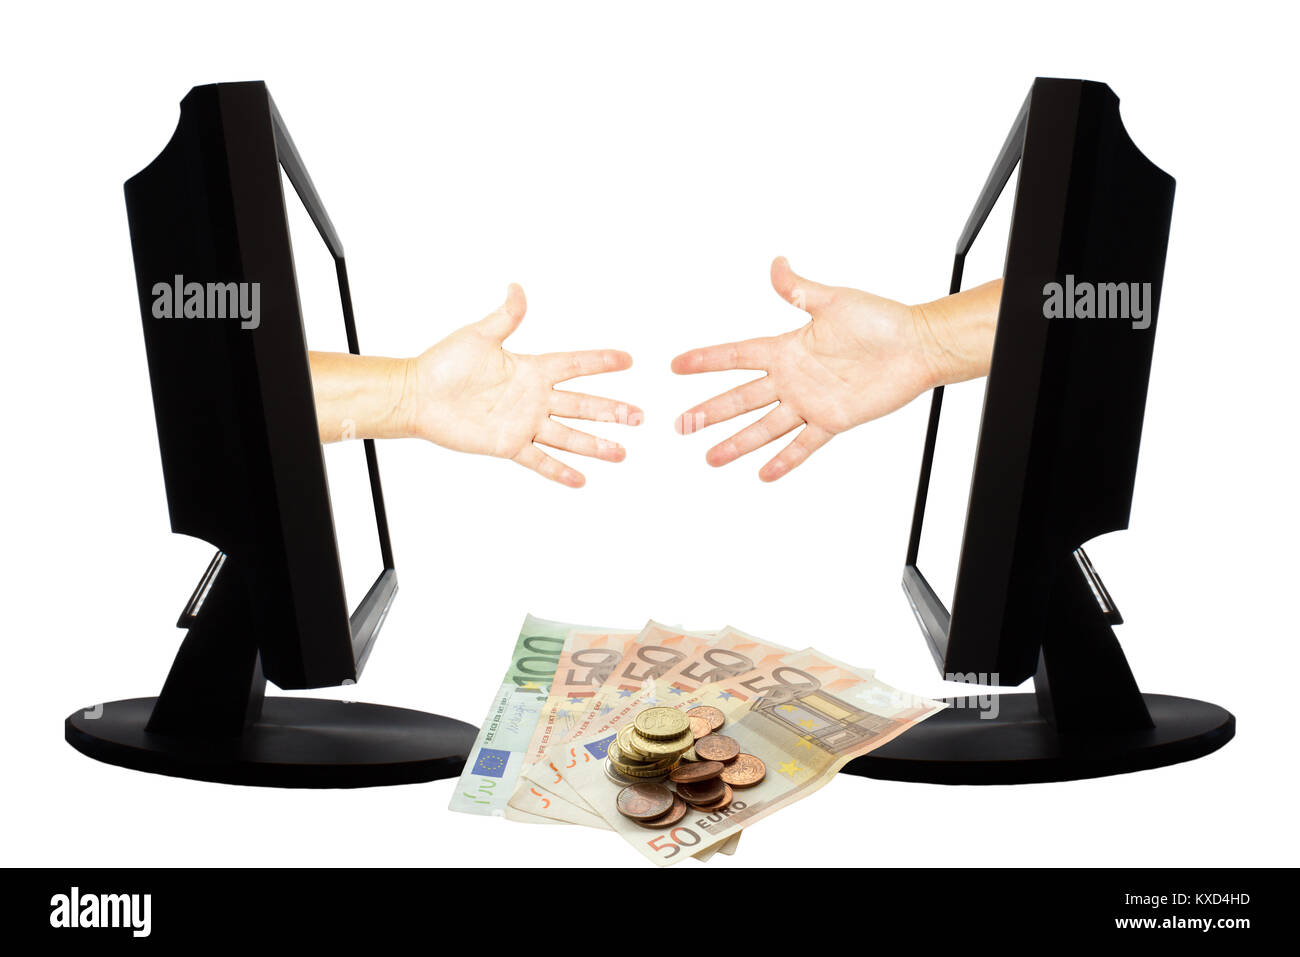 Virtuelle Spiel durch Internet hand Form der Schere Stein auf weißem Hintergrund mit Geld Euro-Banknoten und -Münzen - Internet Business Konzept. Stockfoto